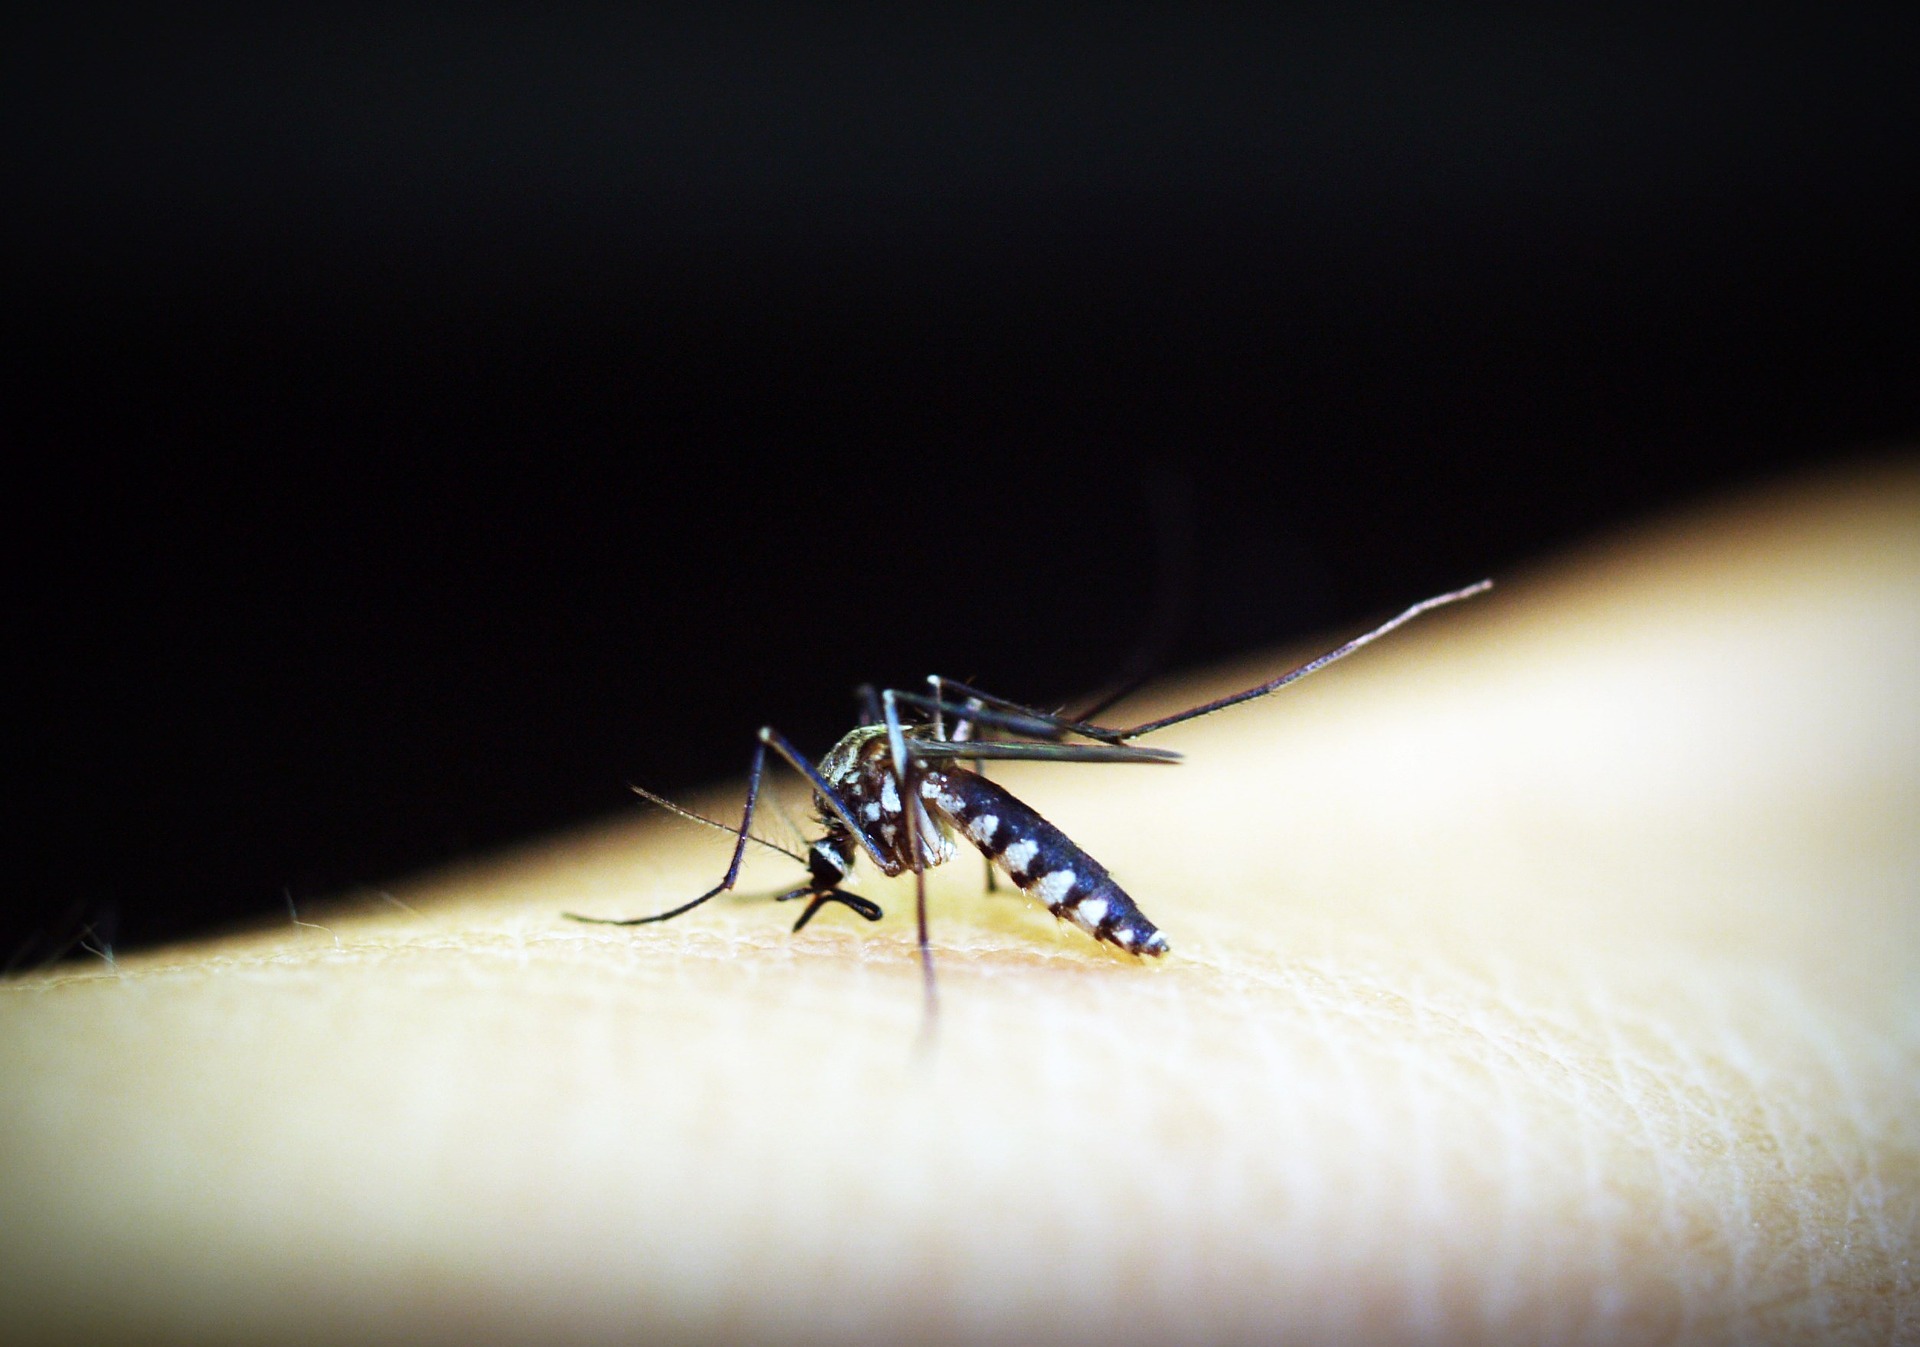 Infectologista do Hapvida reforça que combate ao Aedes aegypti deve ser levado a sério